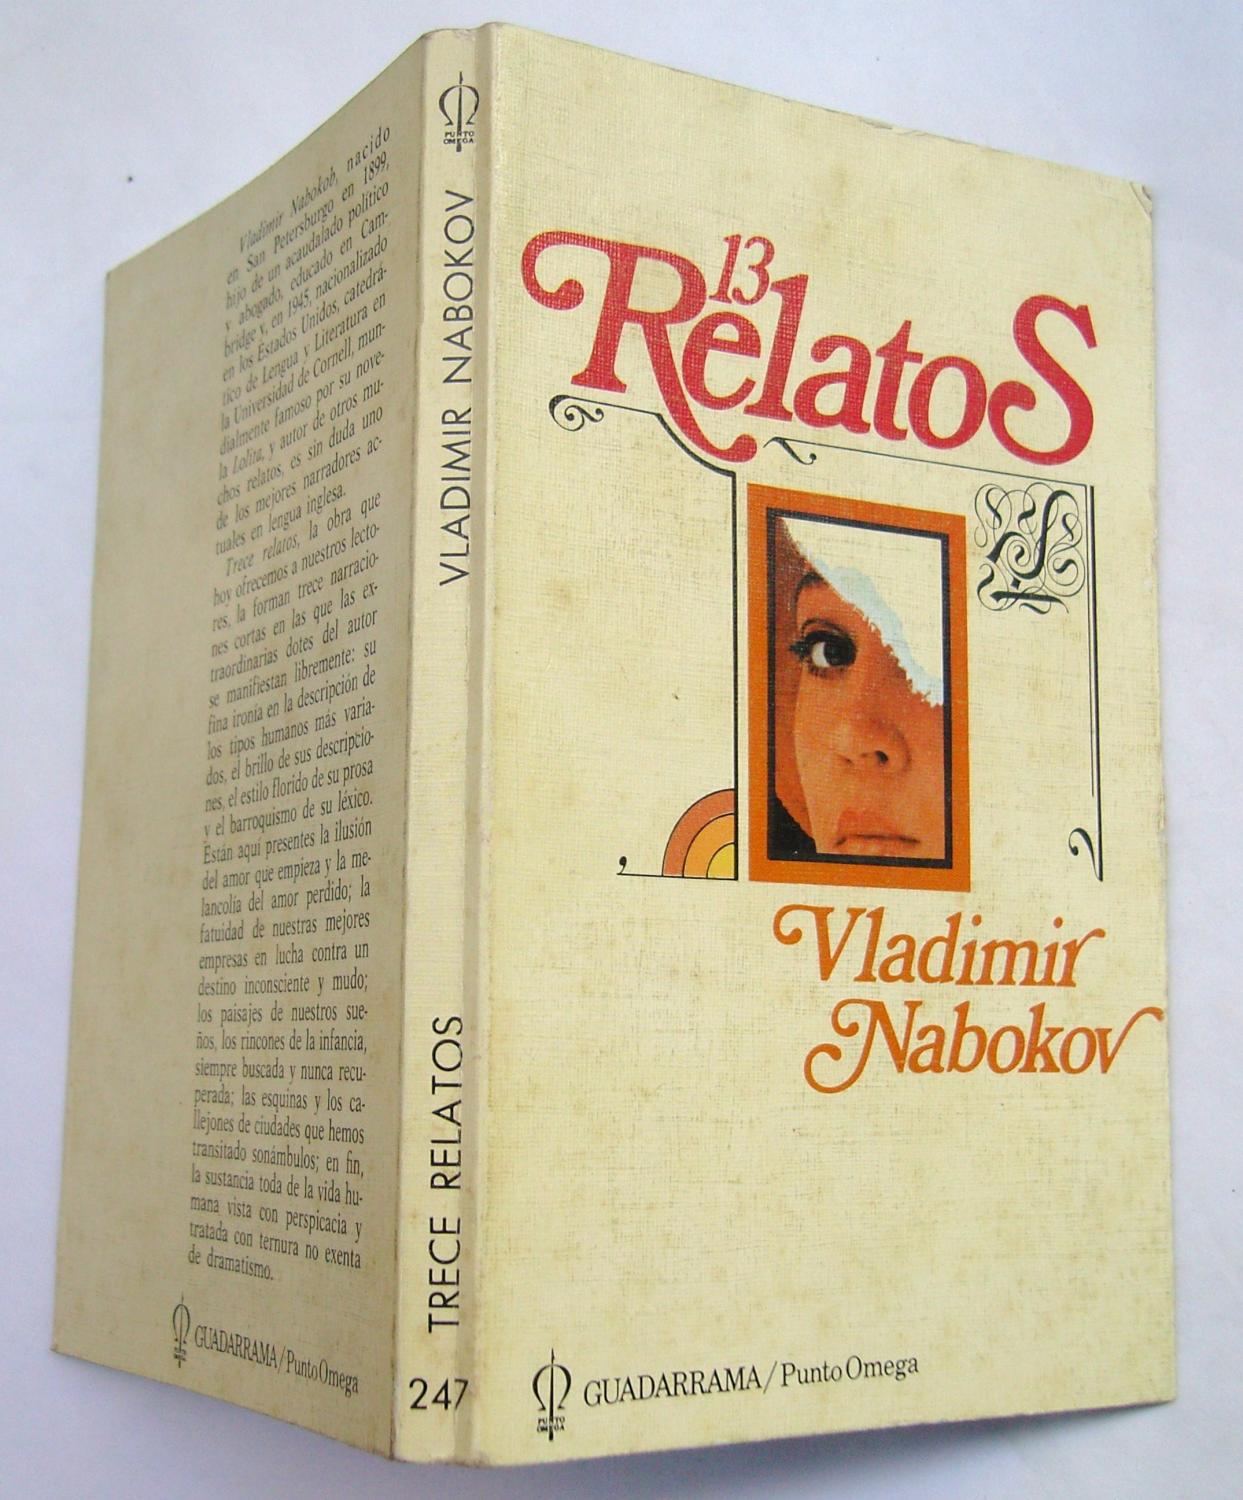 13 Relatos - Vladimir Nabokov